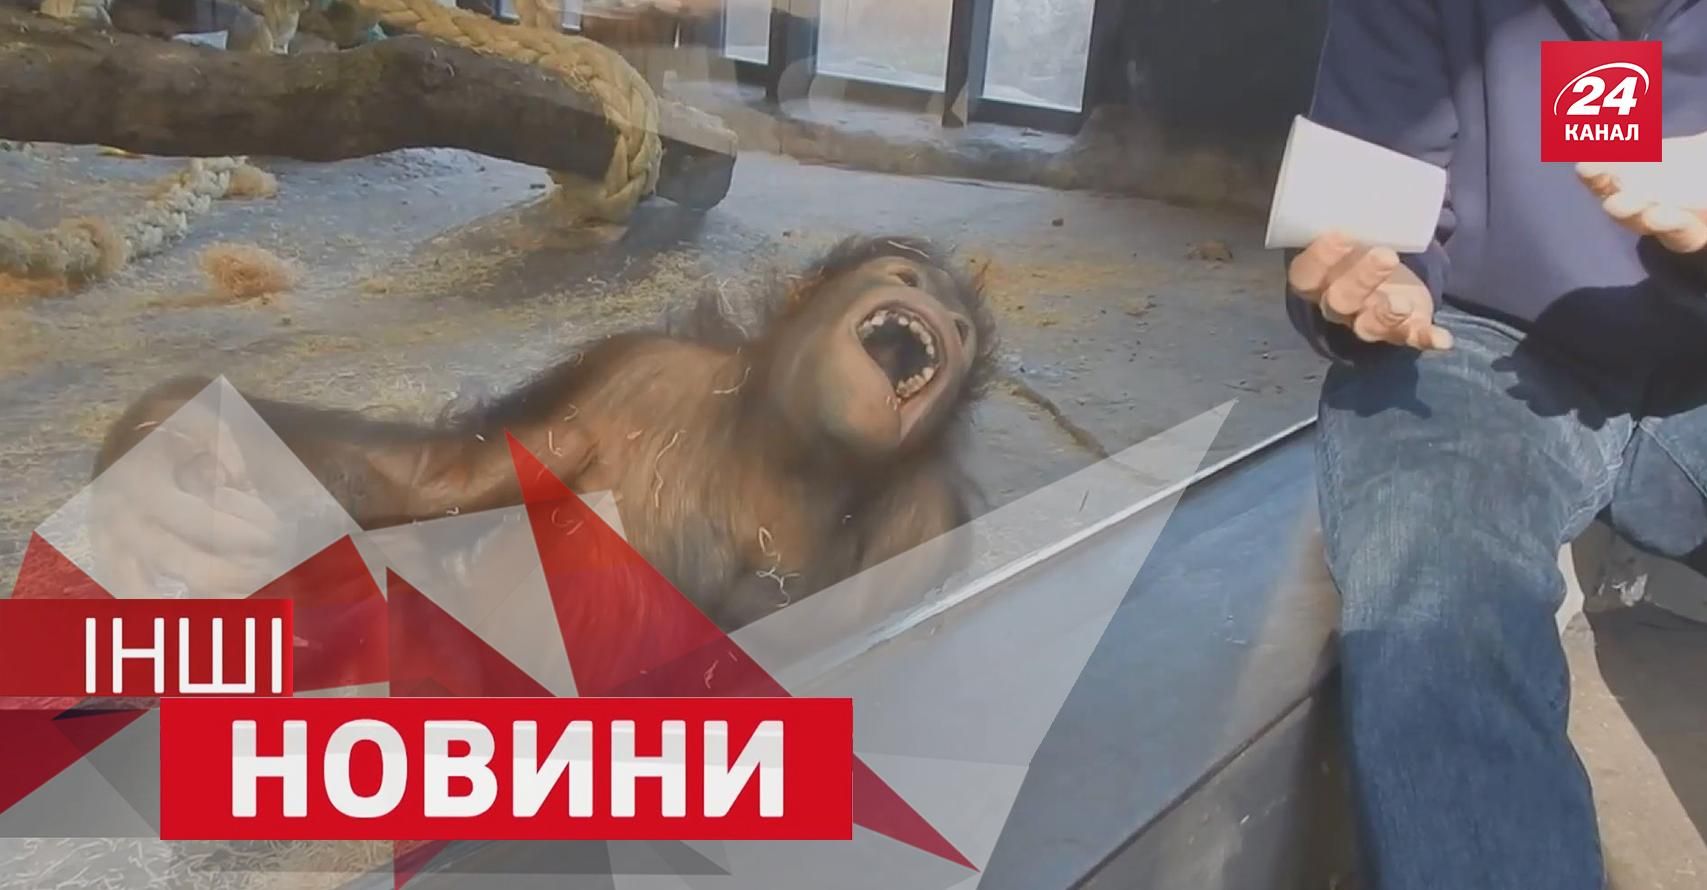 ДРУГИЕ Новости. Какие фокусы любят орангутанги, самая креативная реклама года